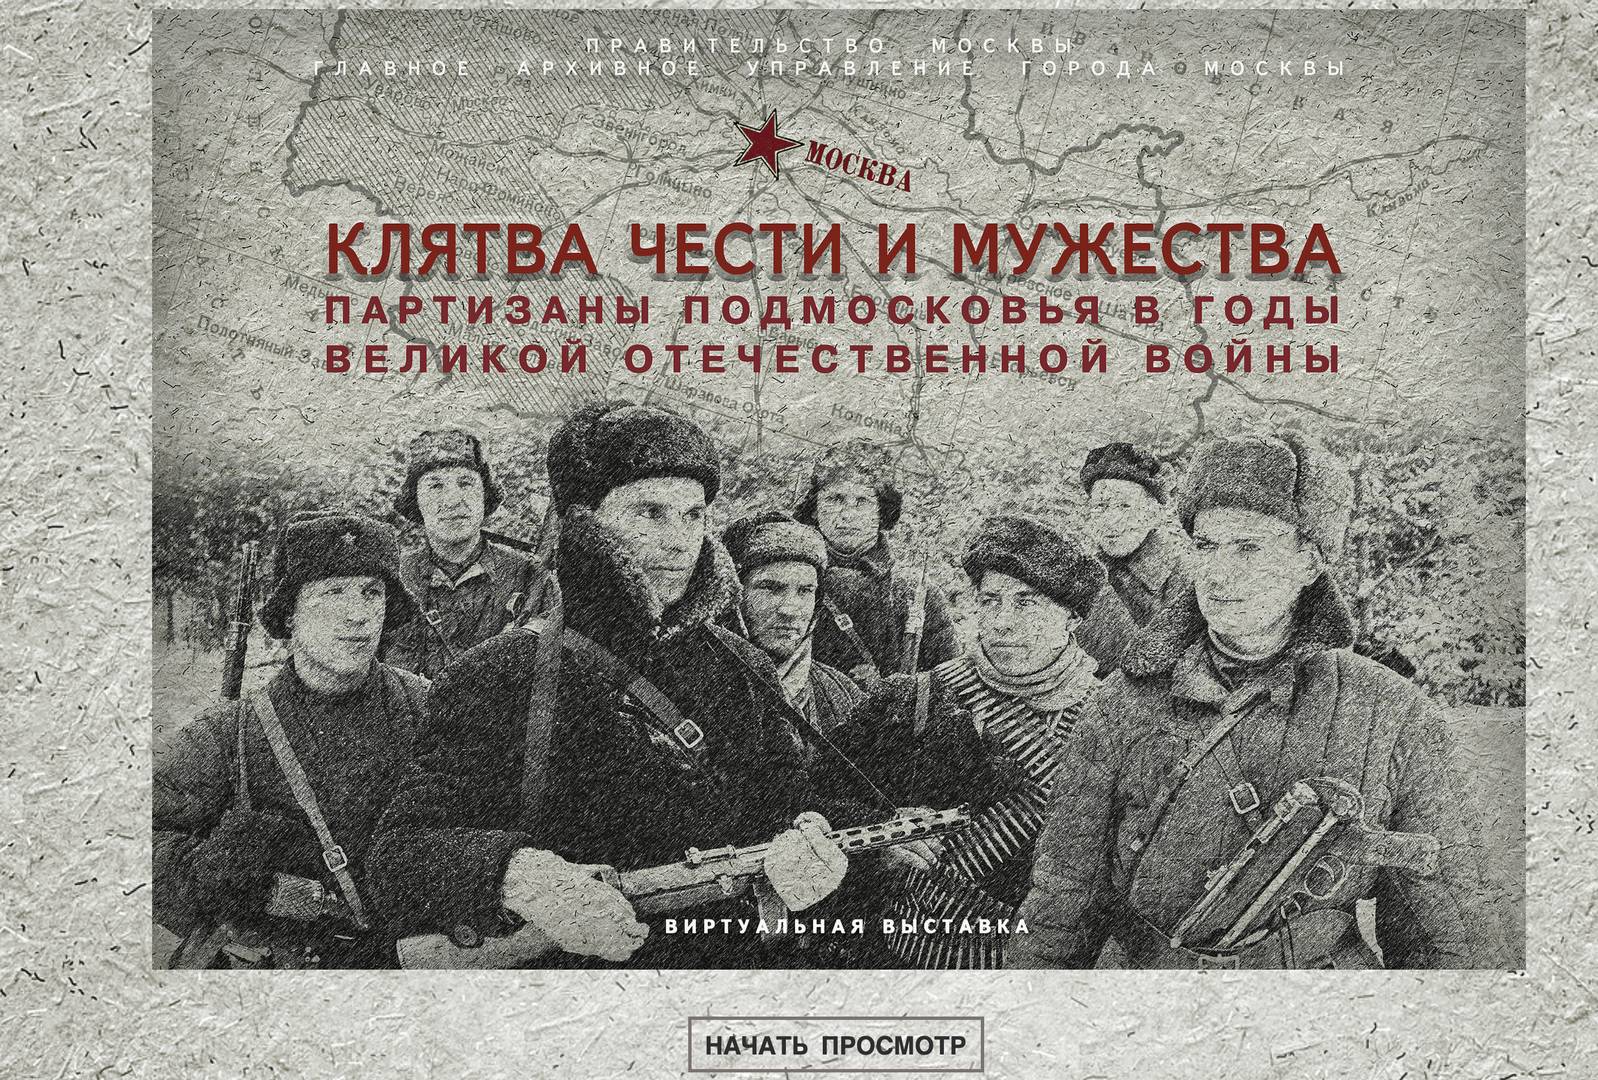 Партизанское Подмосковье в годы Великой Отечественной войны